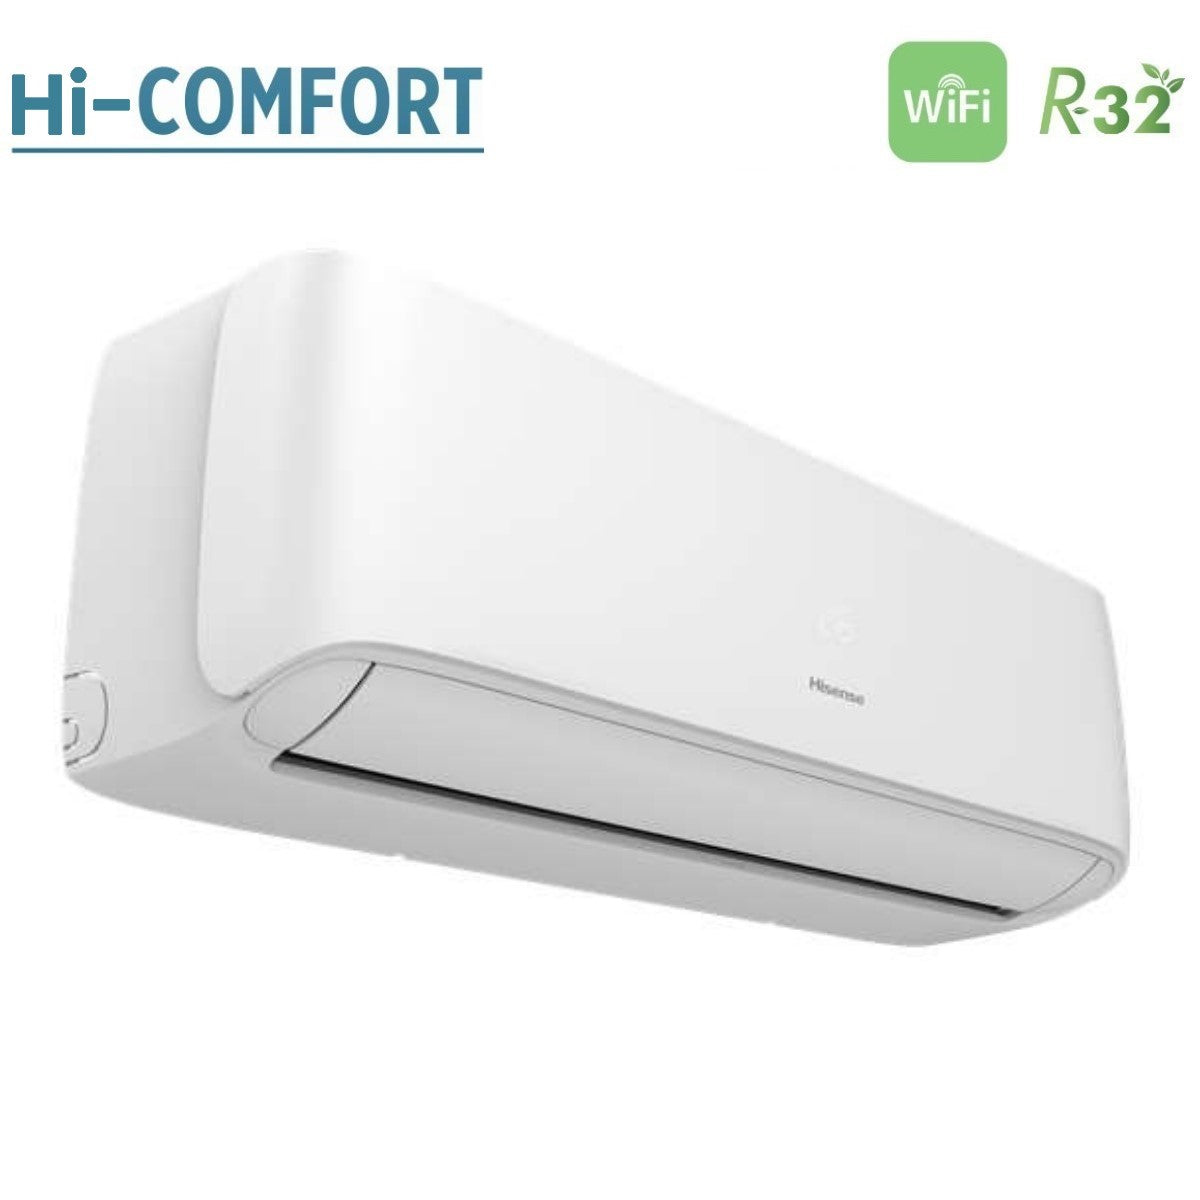 immagine-3-hisense-climatizzatore-condizionatore-hisense-dual-split-inverter-serie-hi-comfort-1212-con-2amw52u4rxc-r-32-wi-fi-integrato-1200012000-novita